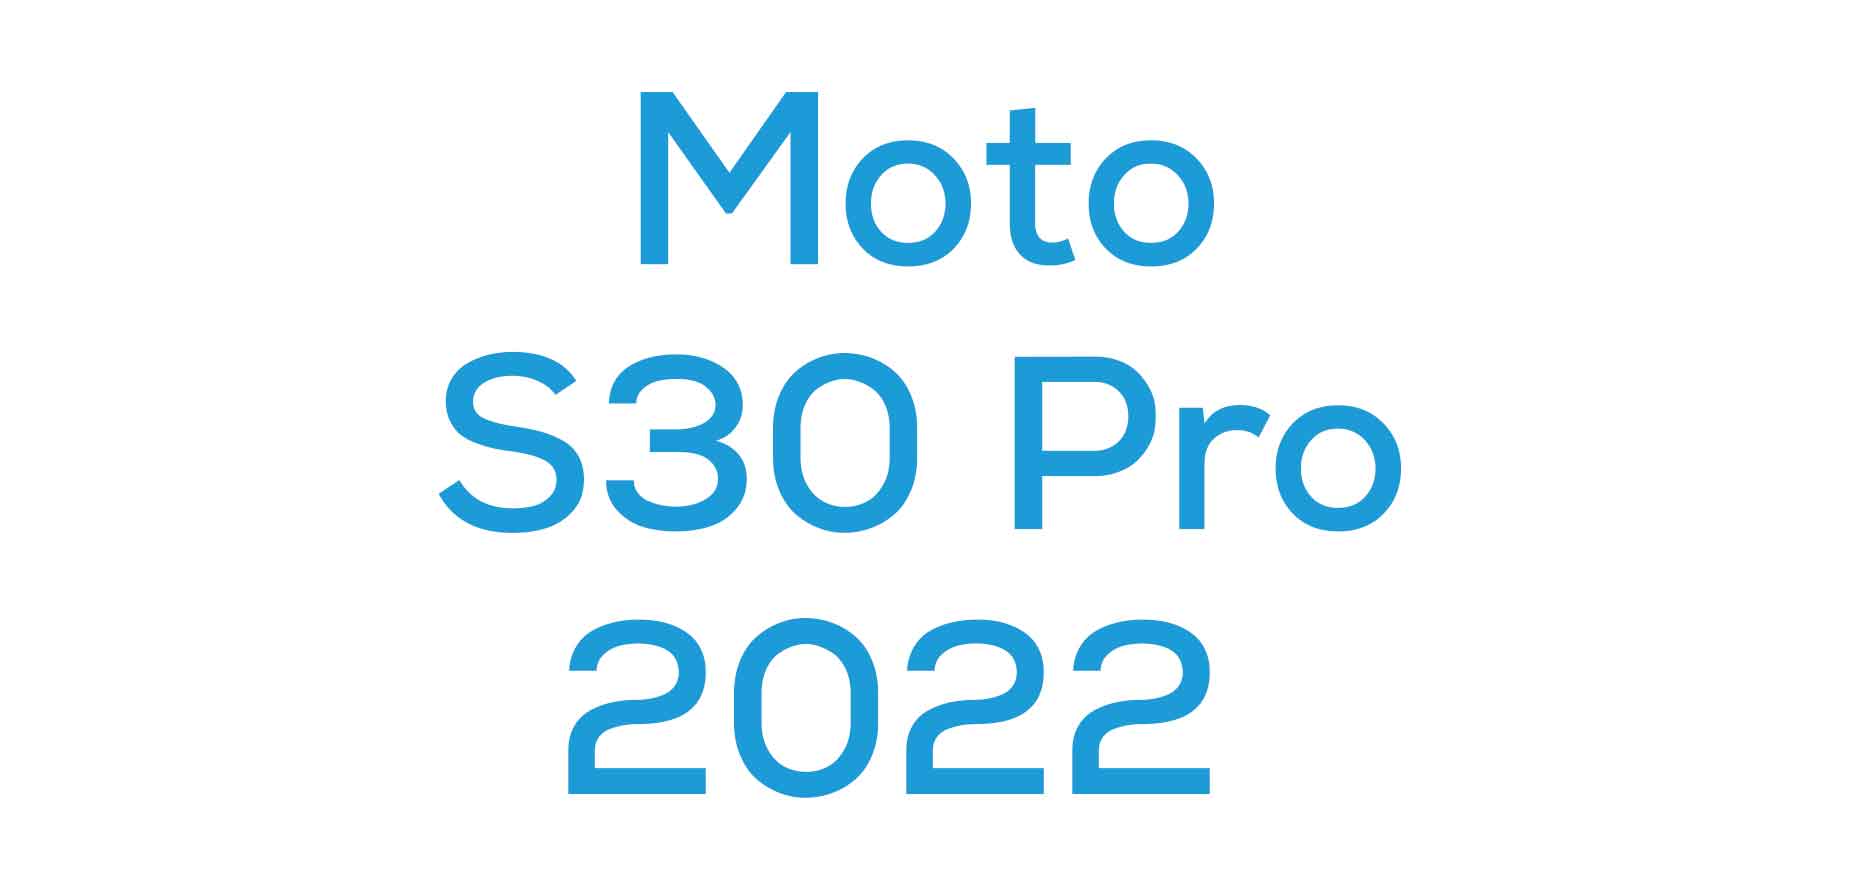 Moto S30 Pro (2022)